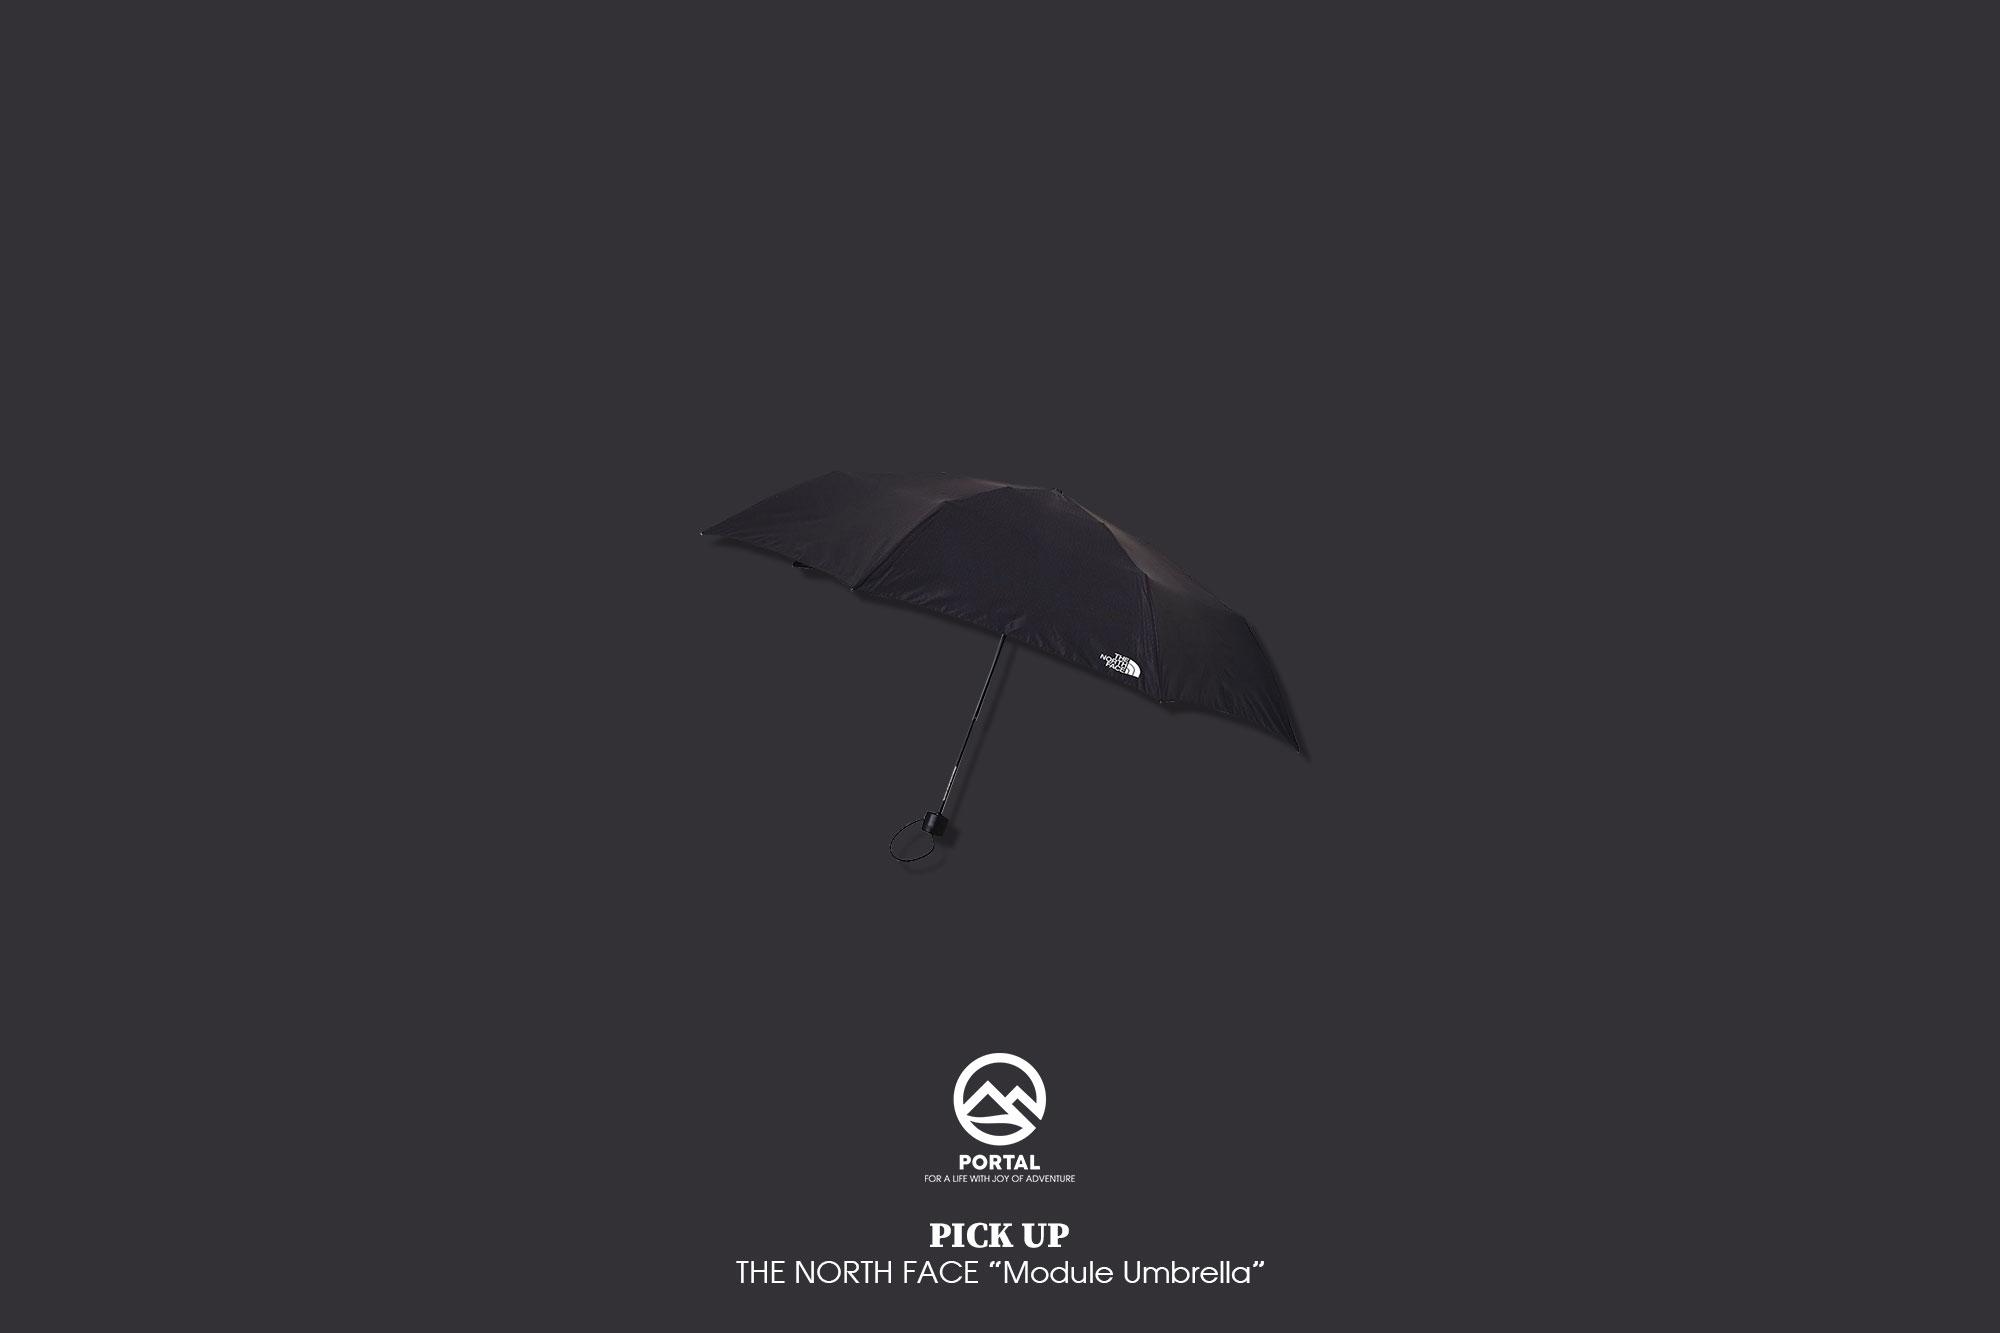 THE NORTH FACE "Module Umbrella"